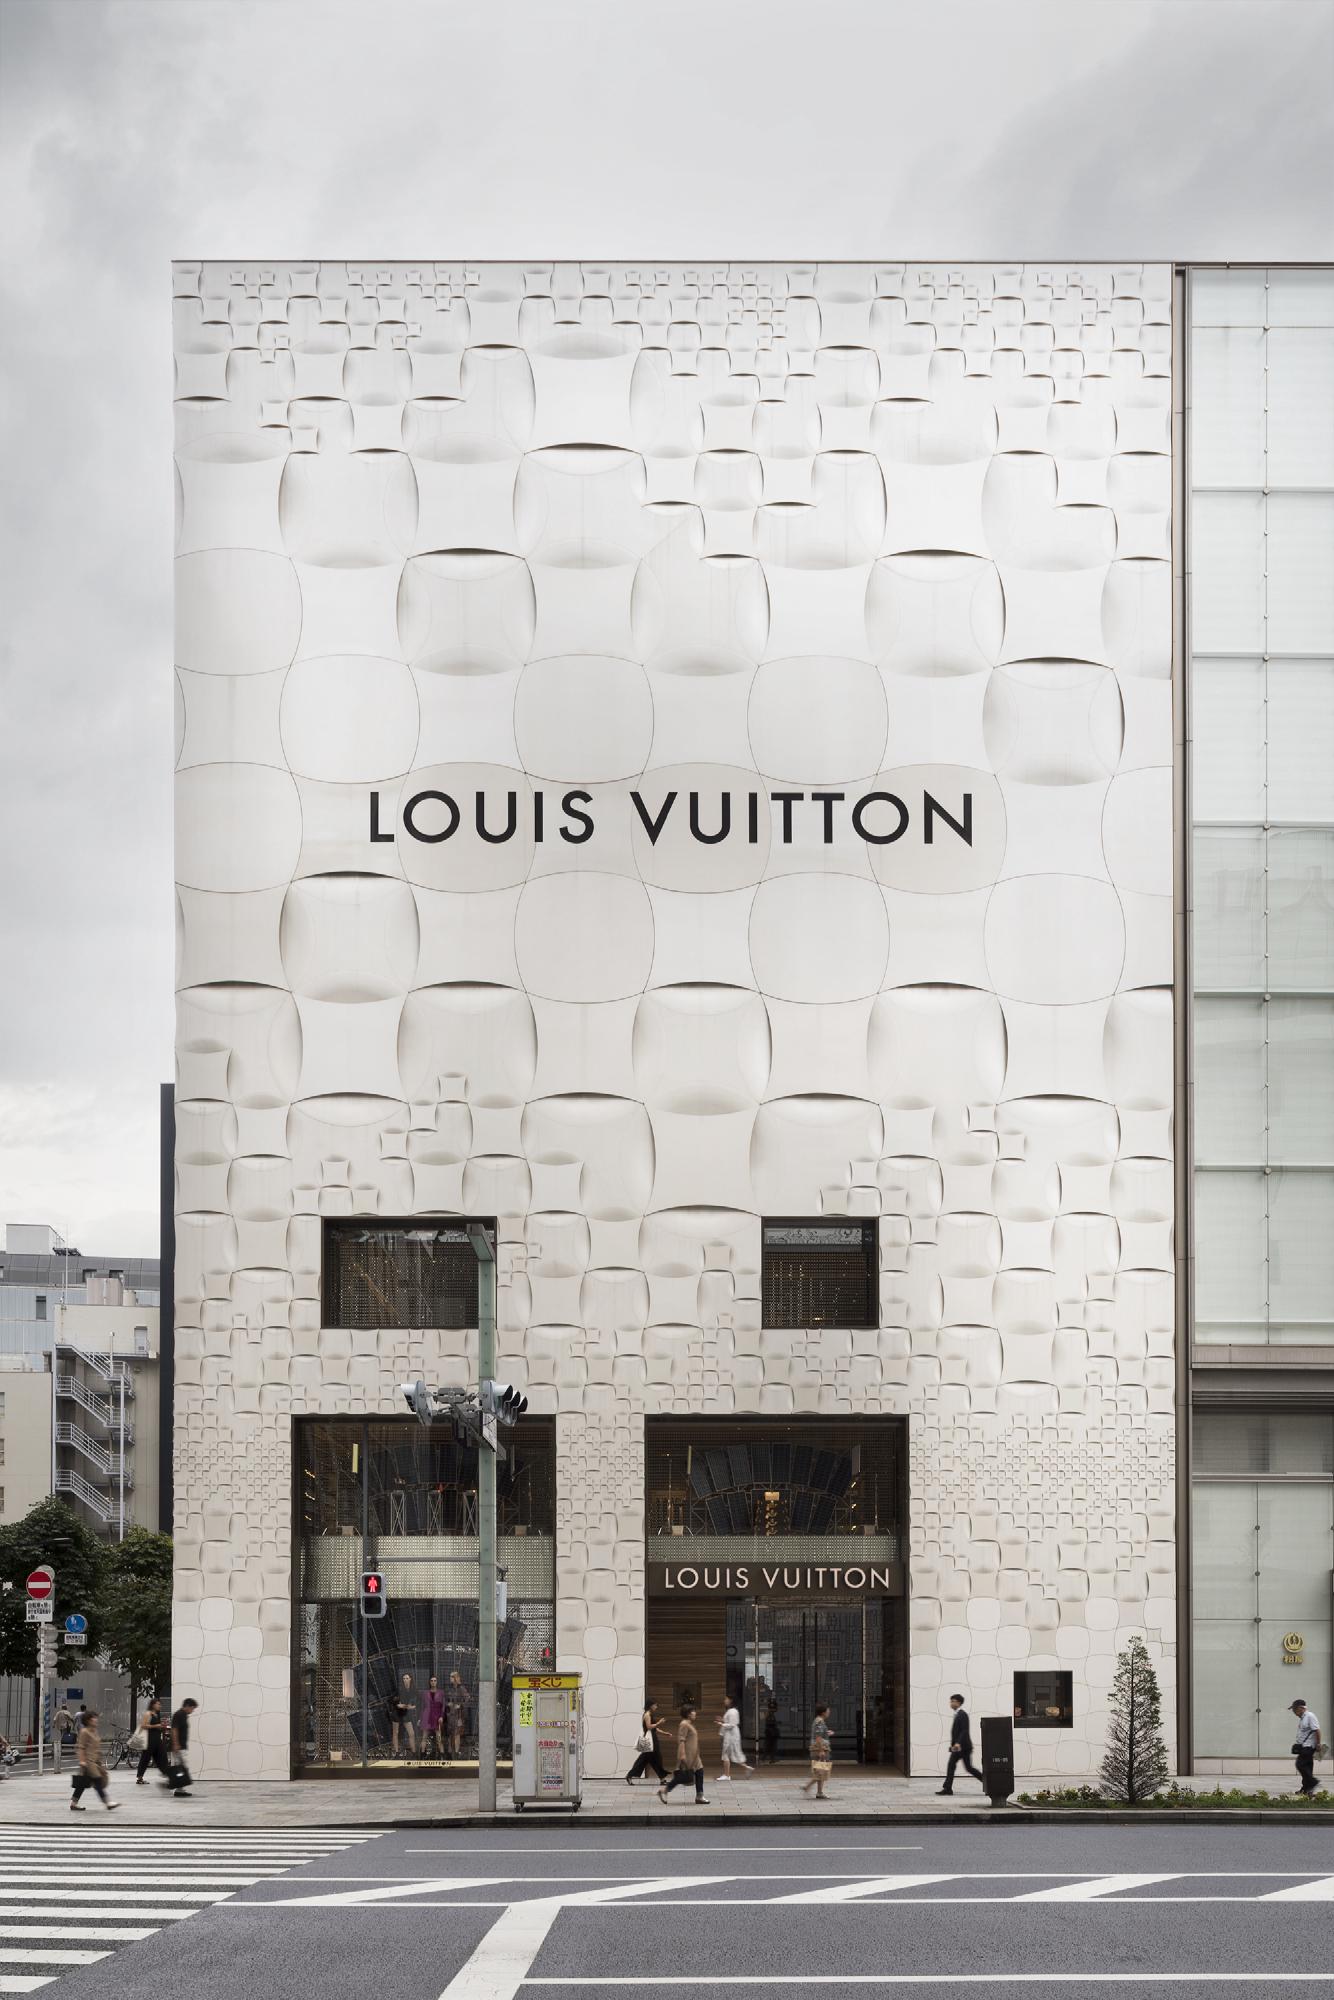 Louis Vuitton Napoli store, Italy